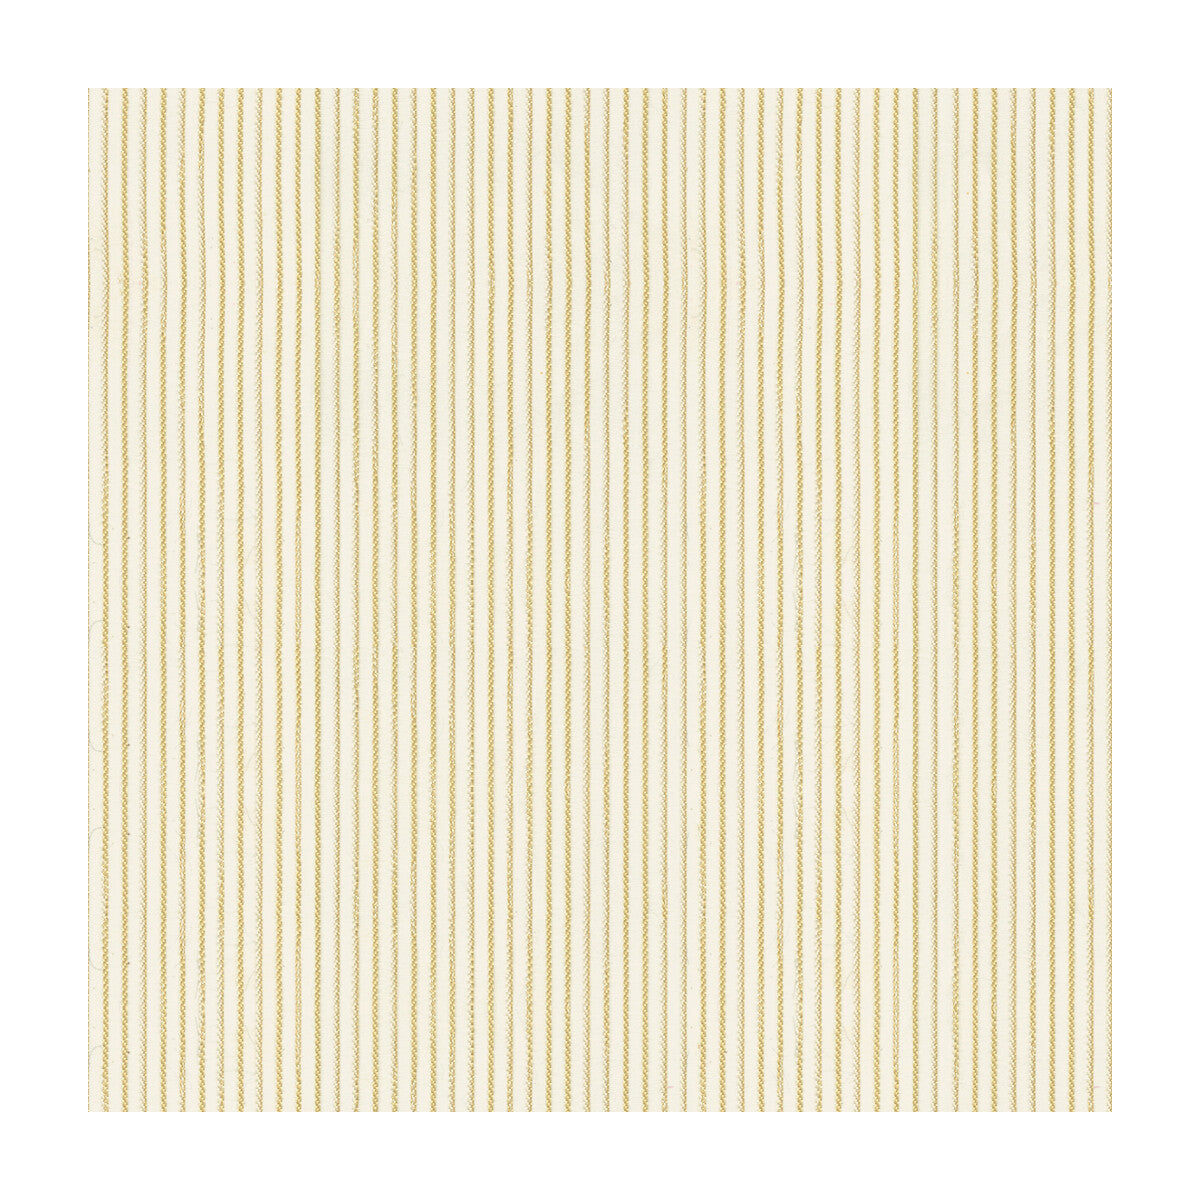 Kravet Basics fabric in 4134-16 color - pattern 4134.16.0 - by Kravet Basics